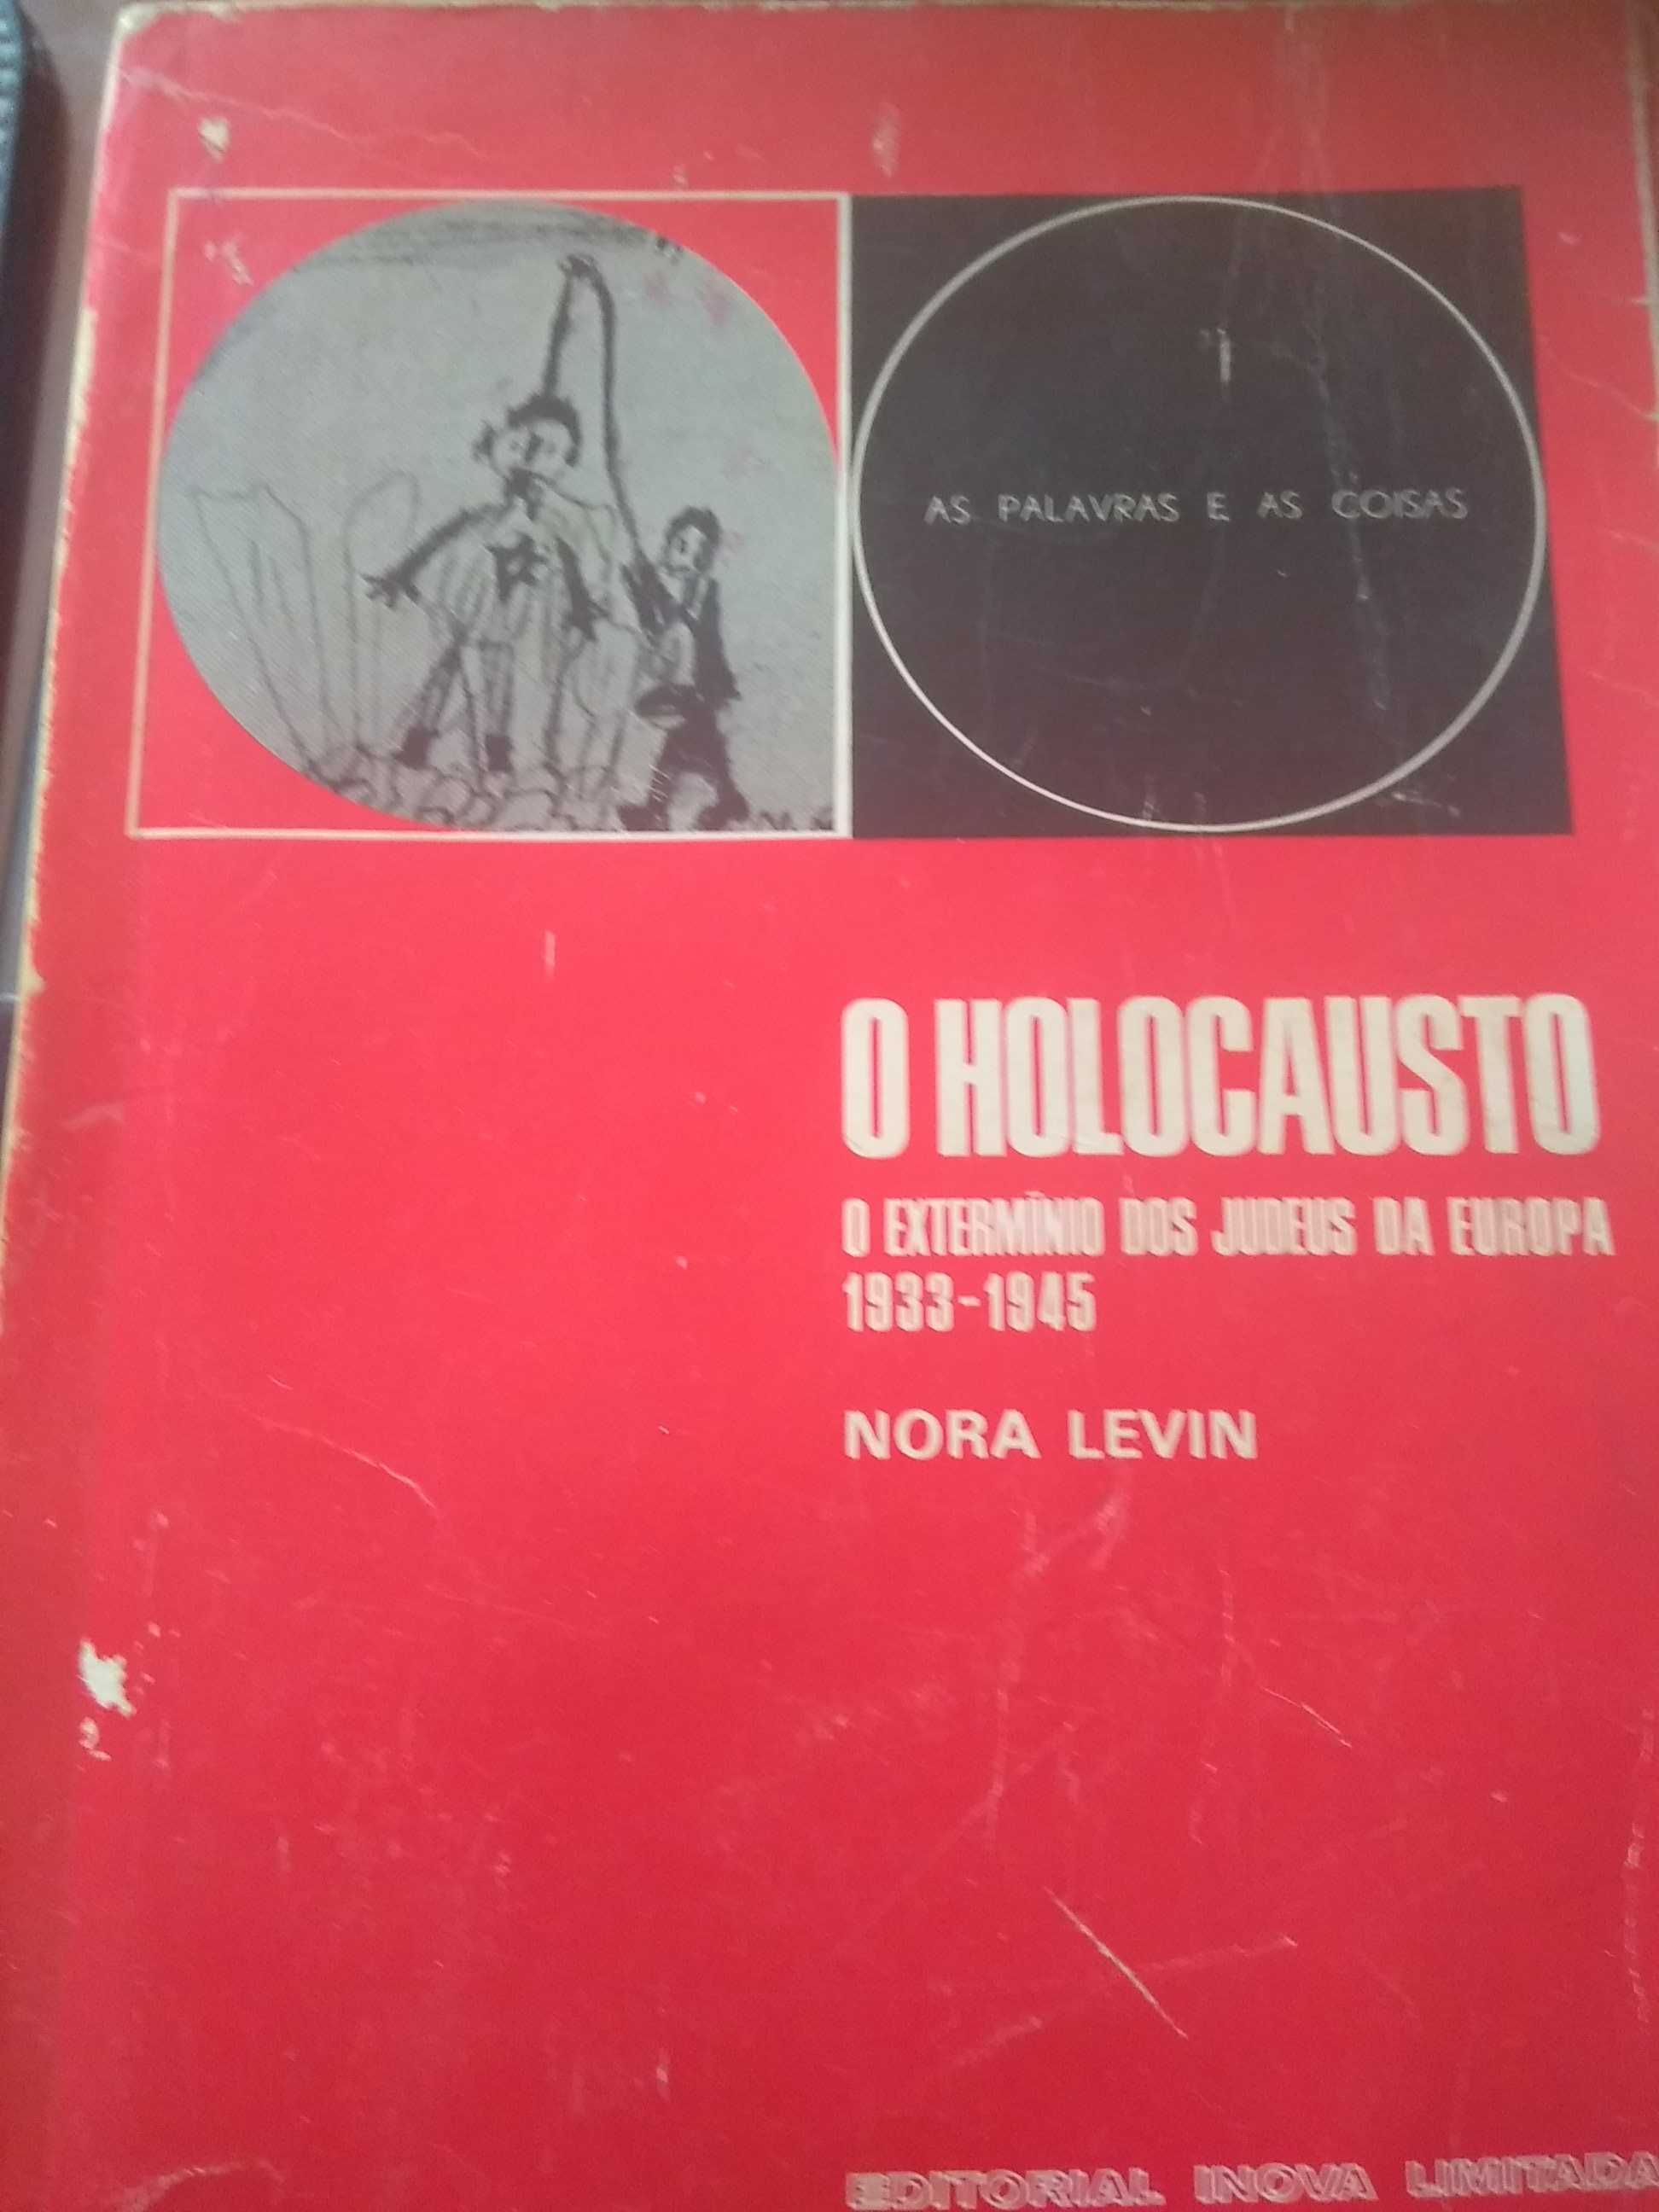 Nora Levin - O Holocausto (extermínio dos Judeus da Europa 1933.-1945)